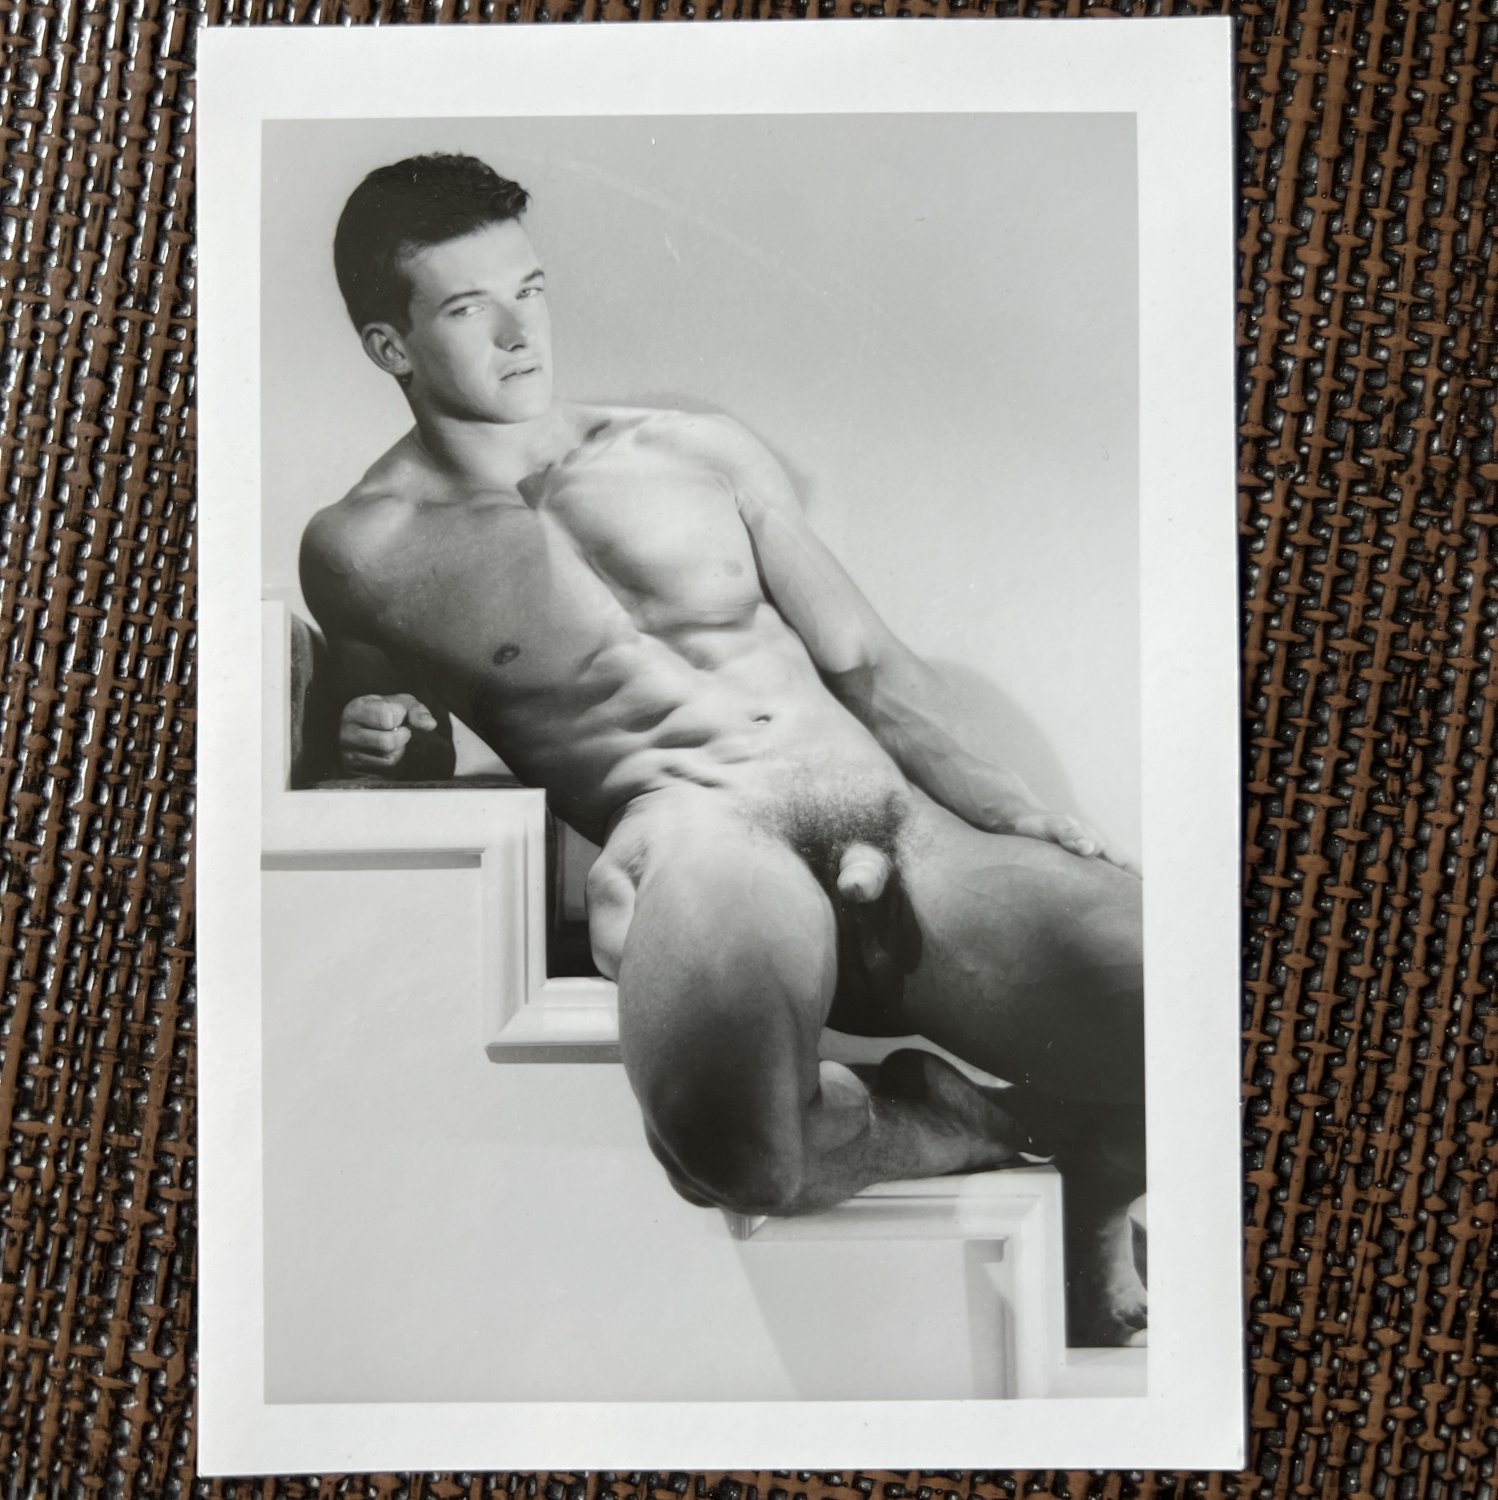 Danny Lucas (1987) COLT STUDIOS Male Nudes Original Photography Art Muscle Physique Vintage Photos